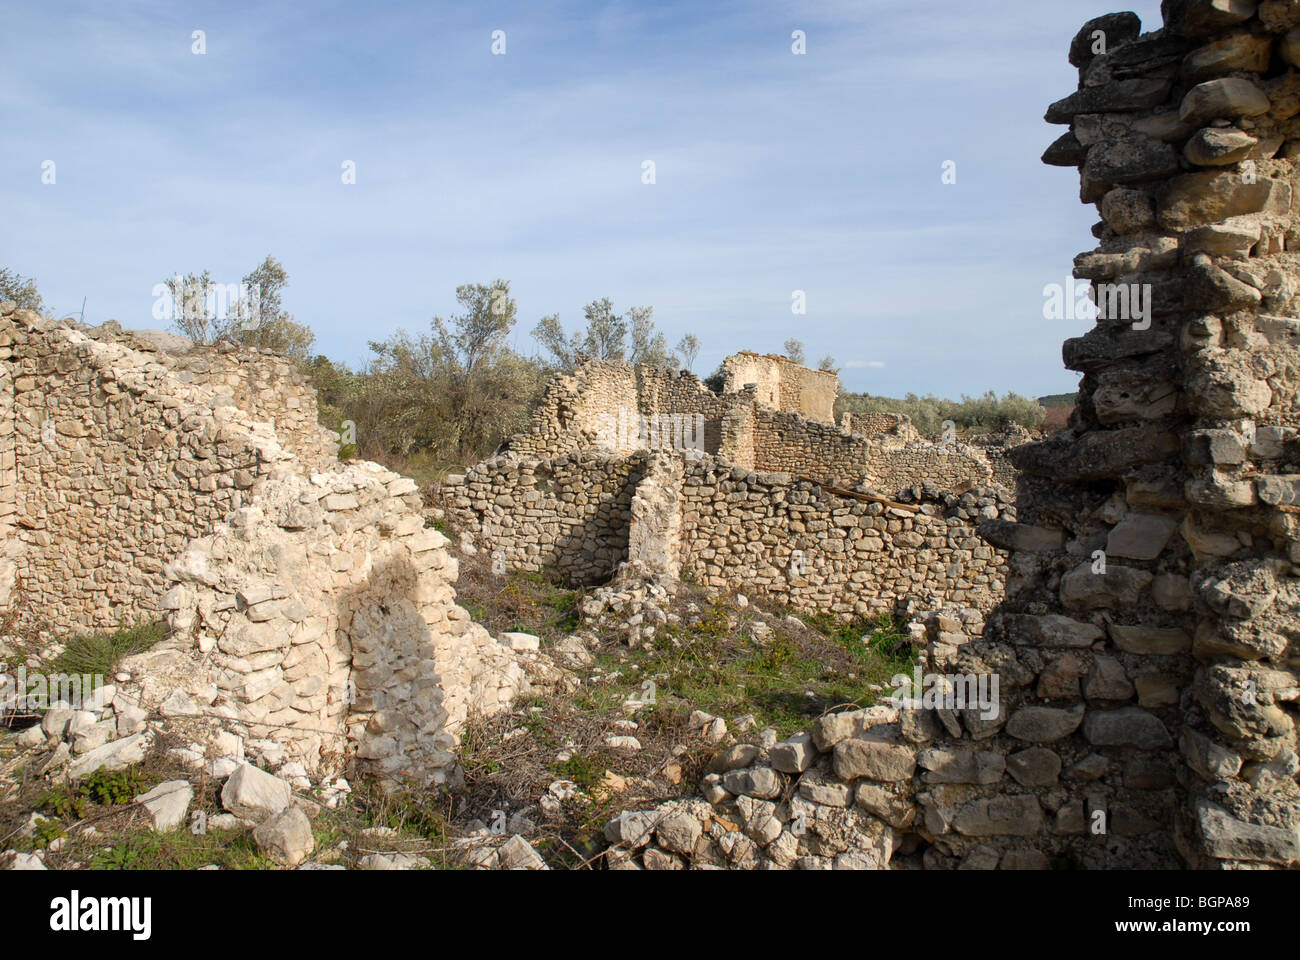 ruined Moorish settlement of La Roca, near Alcala de la Jovada, Vall d'Alcala, Alicante Province, Comunidad Valenciana, Spain Stock Photo